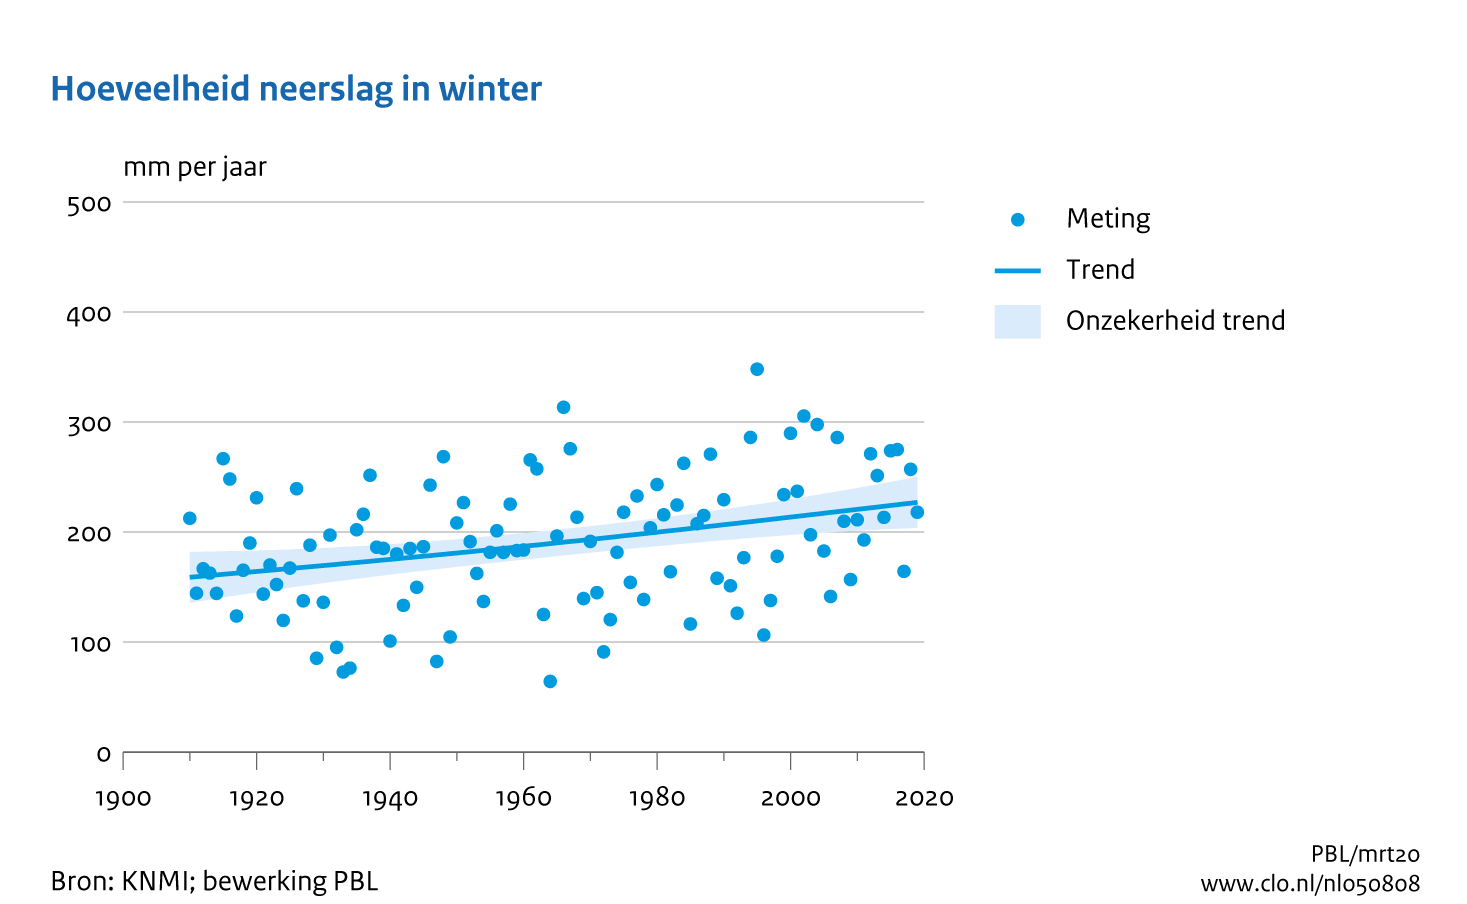 Figuur  Jaarlijkse hoeveelheid neerslag winter in Nederland. In de rest van de tekst wordt deze figuur uitgebreider uitgelegd.